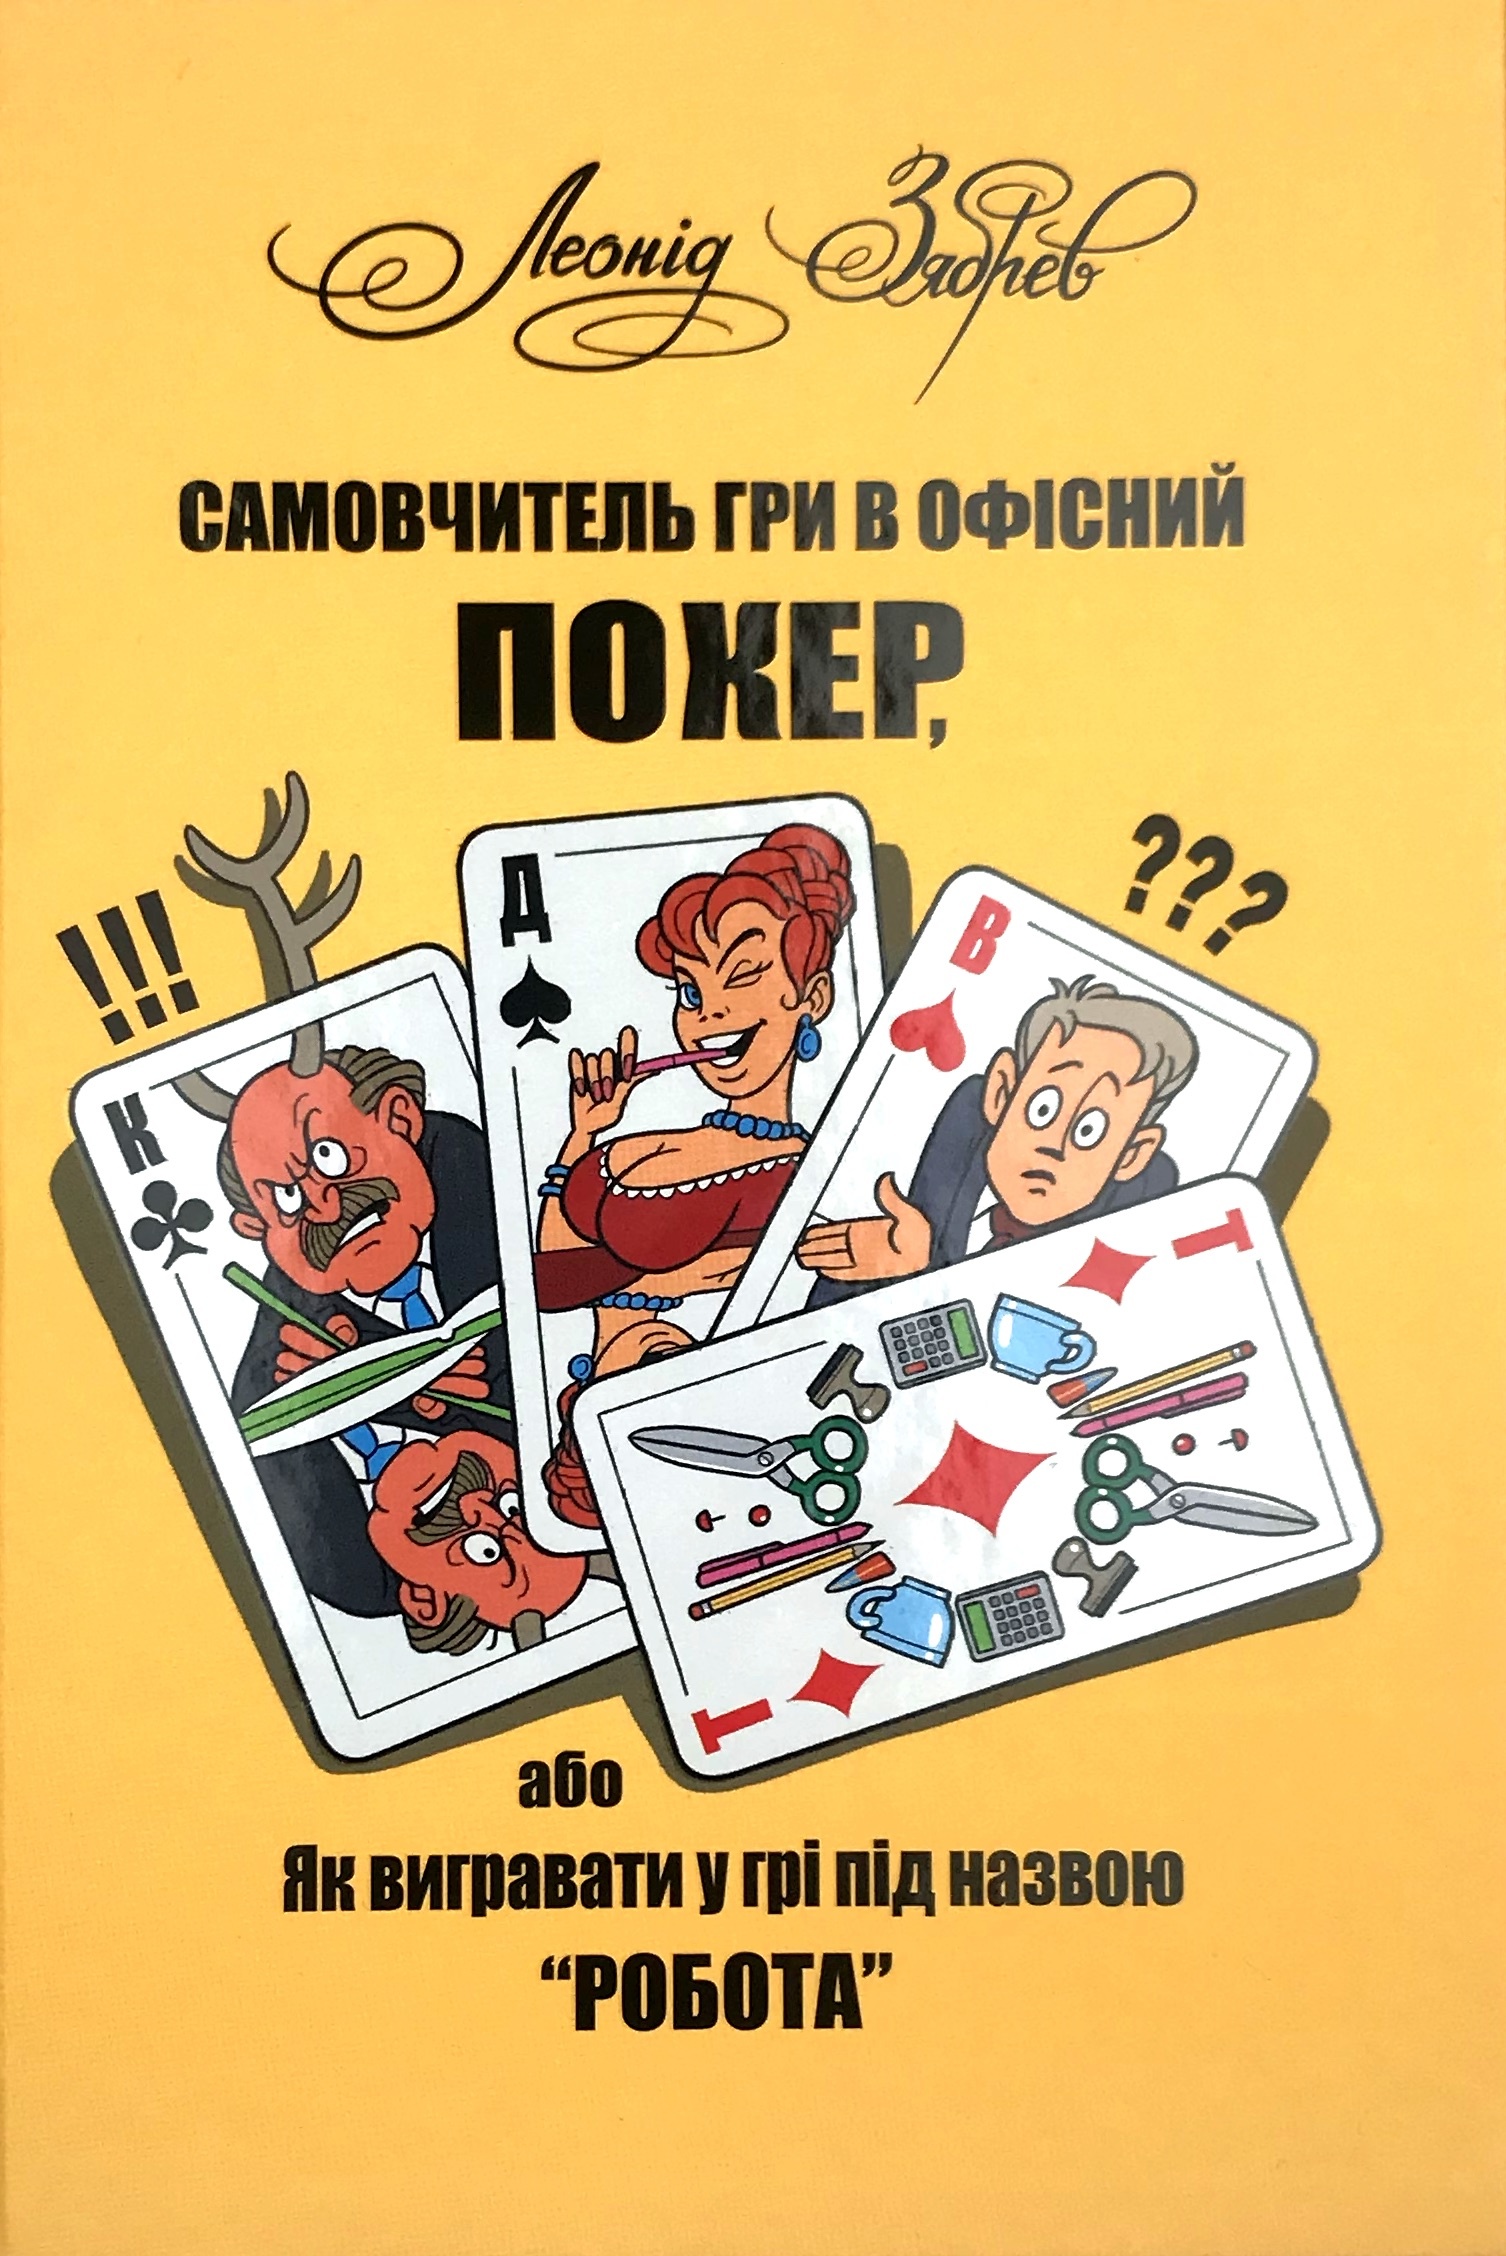 Самовчитель гри в офісний покер, або Як вигравати у грі під назвою "робота". Автор — Зябрев Леонід. 